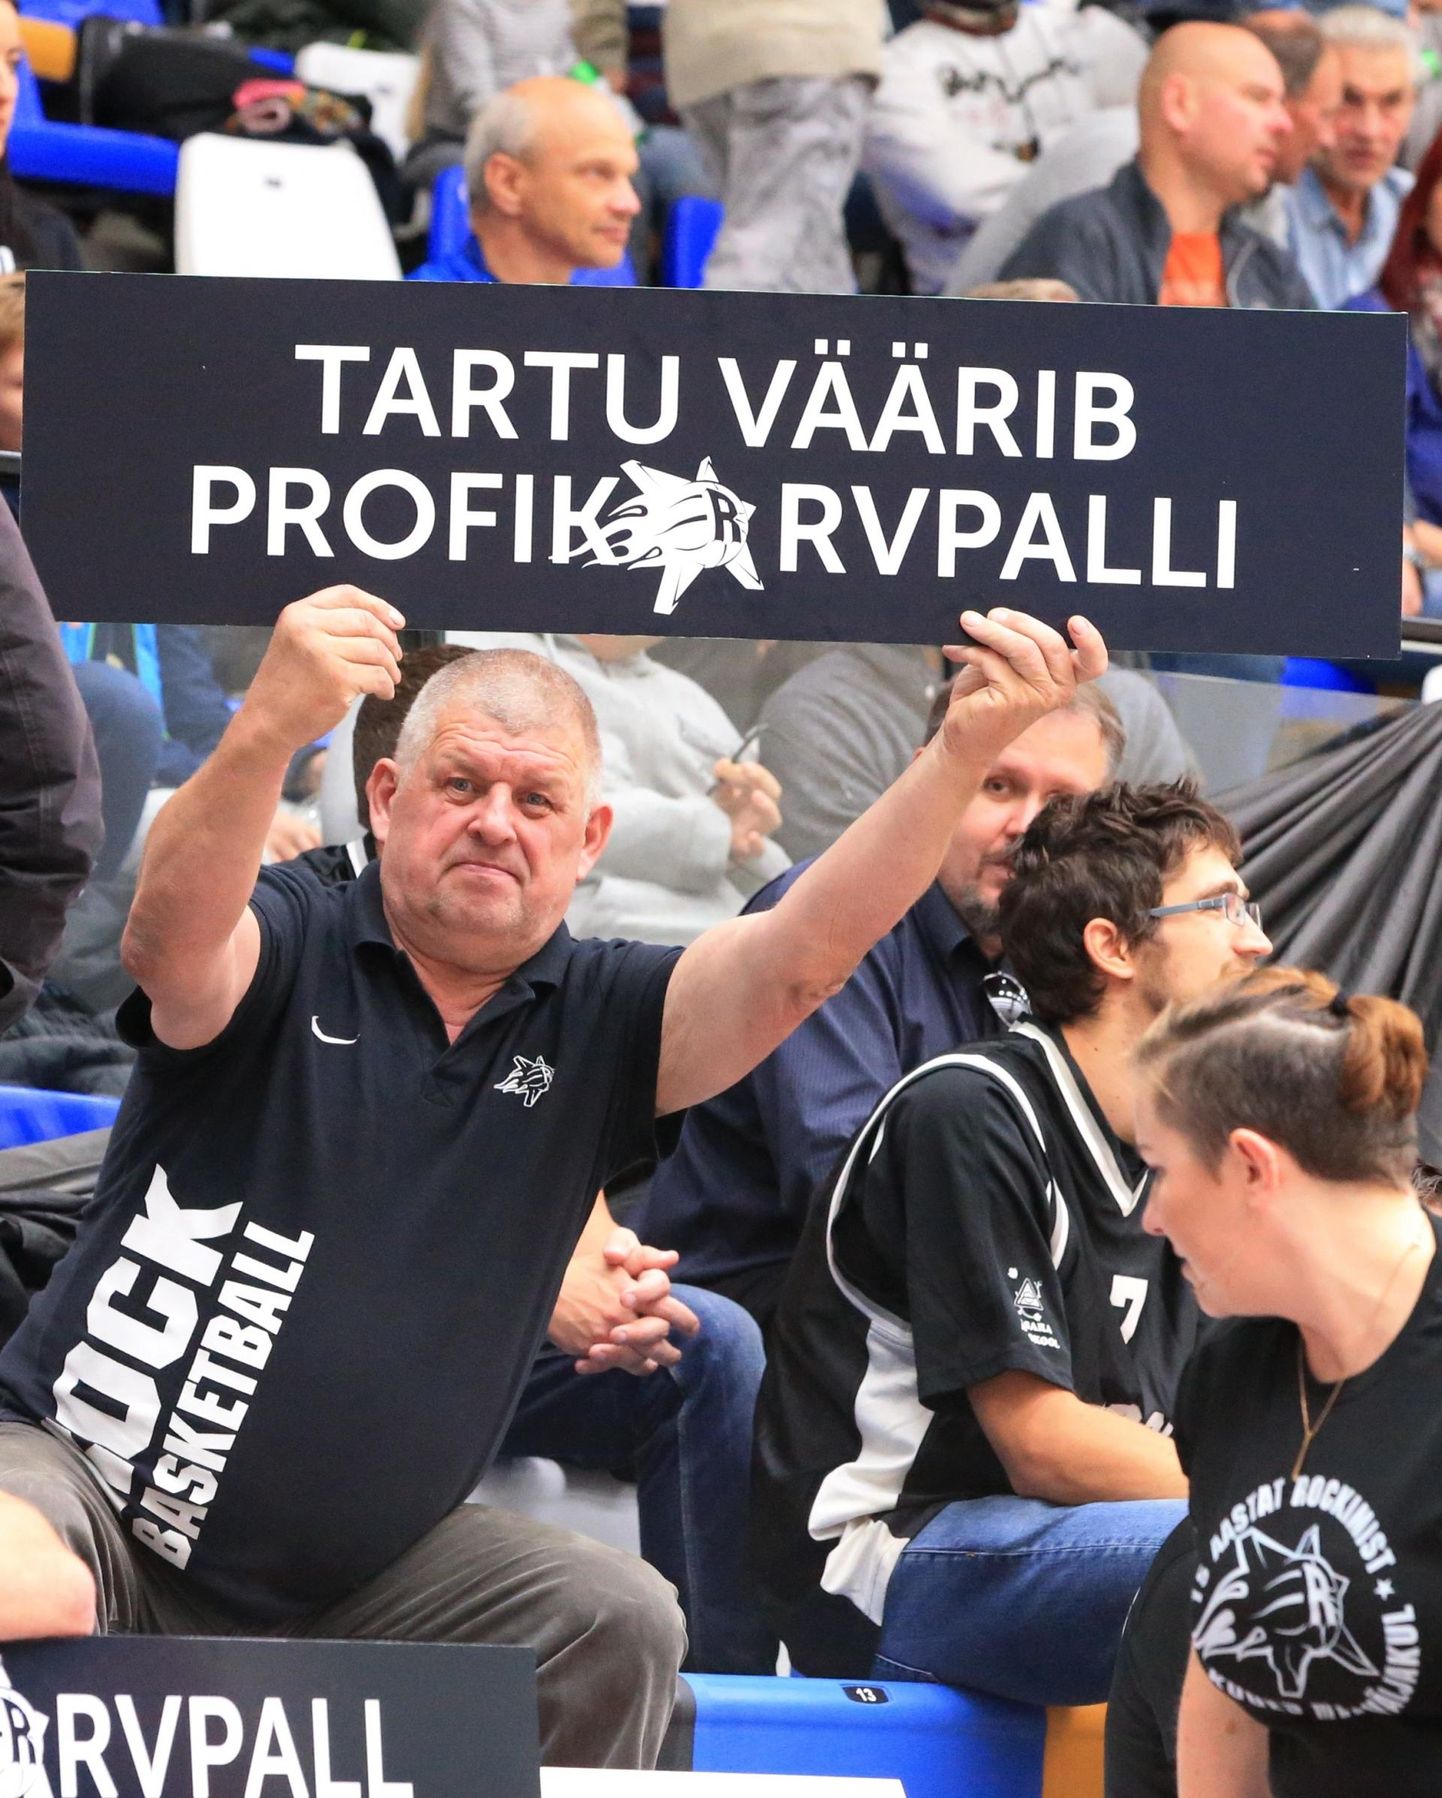 Tartu ülikooli korvpallimeeskonna fänni sõnum hooaja avamängus. Fännid pole noort meeskonda jätnud, kuid Tartu korvpalli tuleviku osas toetatakse pigem initsiatiivgrupi kui ülikooli nägemust.